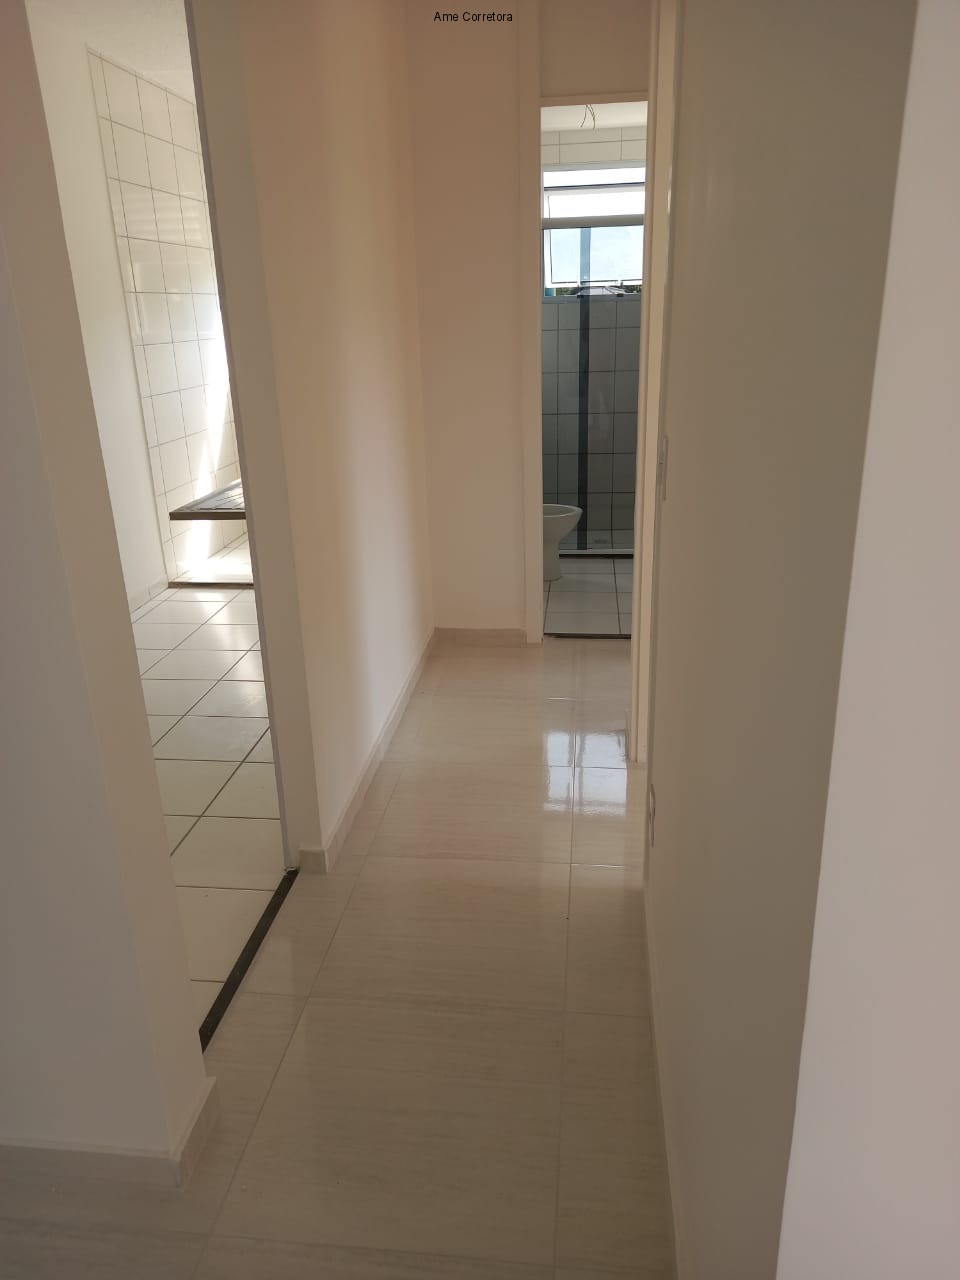 FOTO 10 - Apartamento 2 quartos à venda Rio de Janeiro,RJ - R$ 270.000 - AP00389 - 11